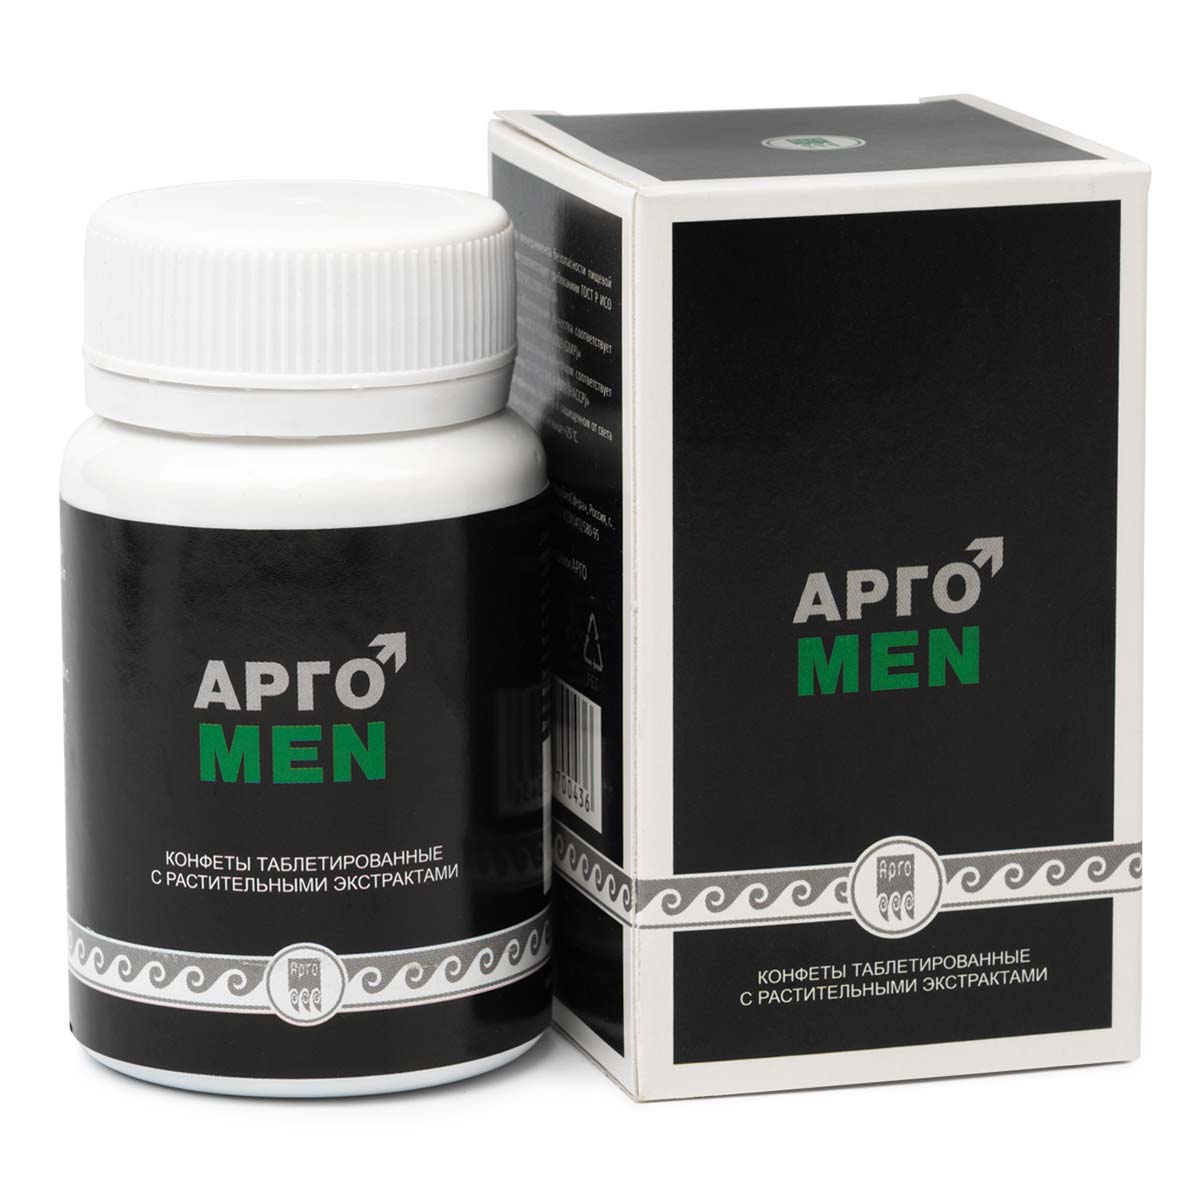 Конфеты таблетированные с растительными экстрактами Апифарм АргоMeN 100 шт.